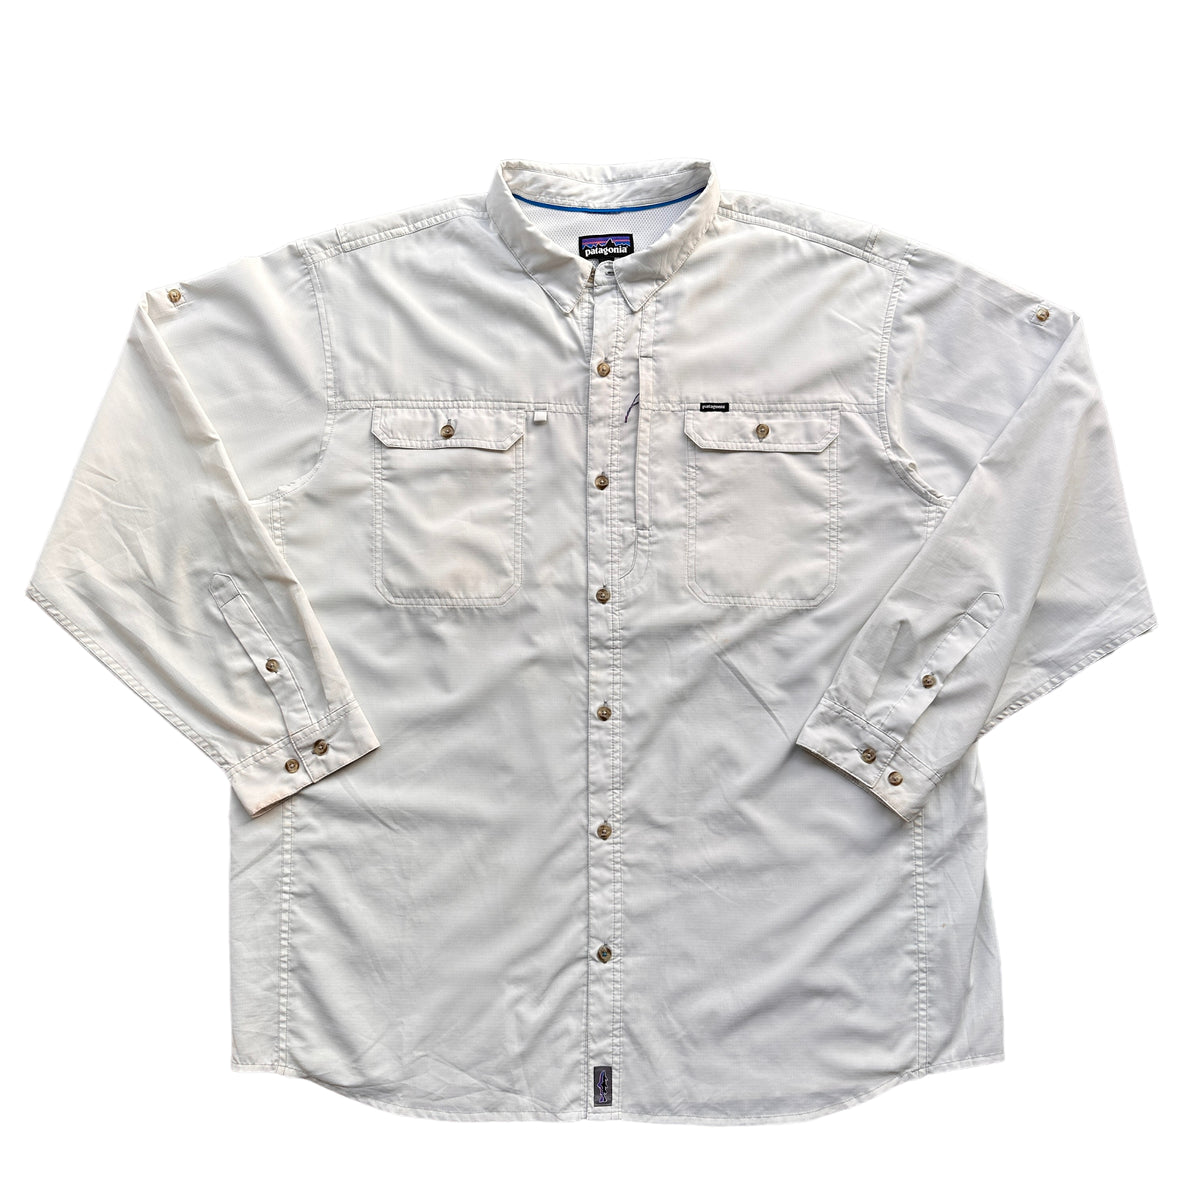 Patagonia fishing shirt XXL – Vintage Sponsor